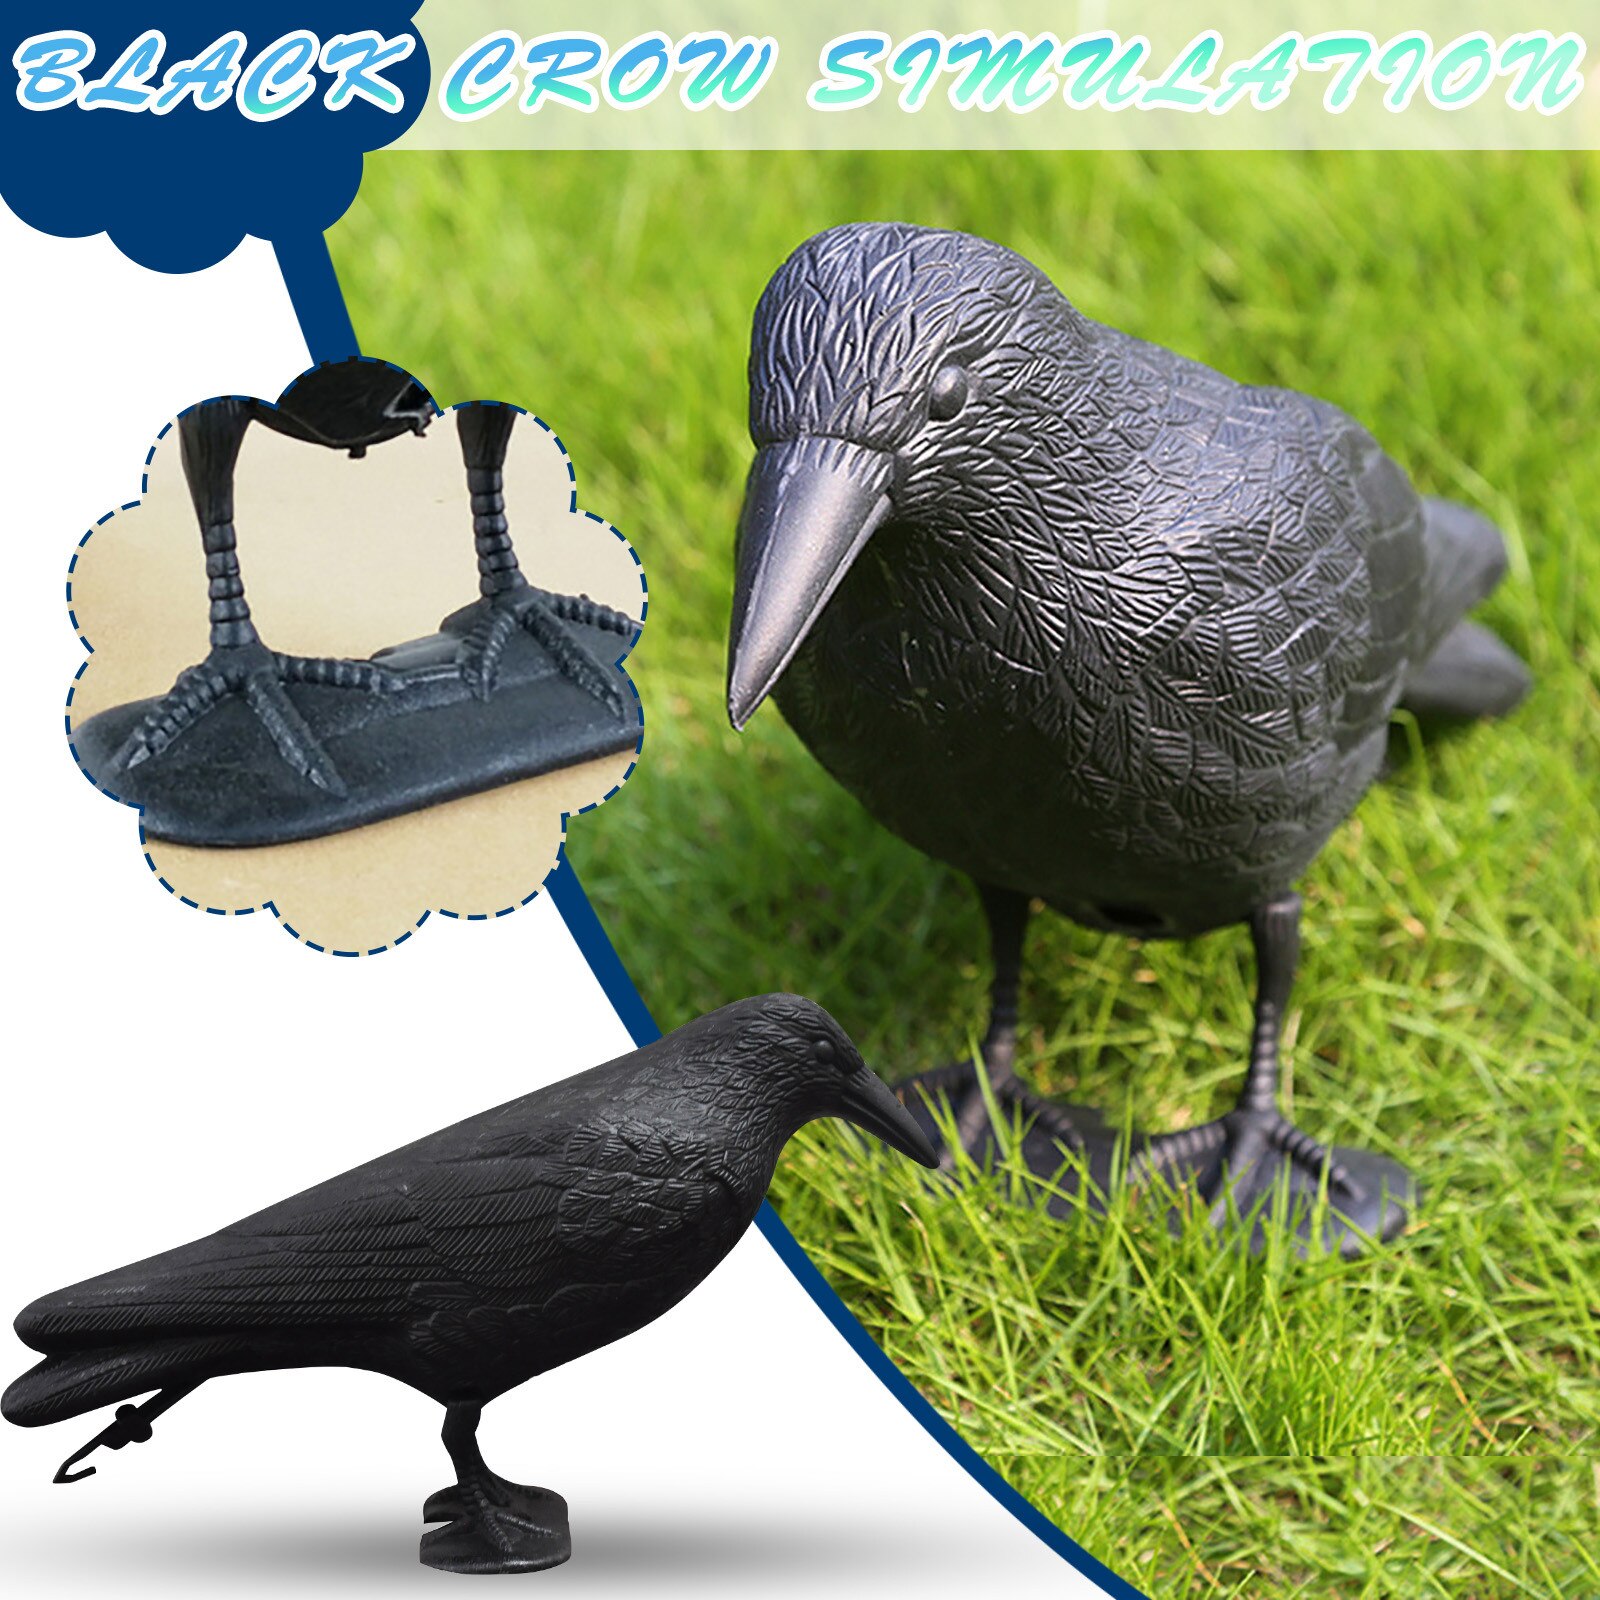 18*10Cm Mooie Simulatie Zwarte Kraai Dier Model Kunstmatige Kraai Zwarte Vogel Raven Prop Scary Decoratie Voor Party levert